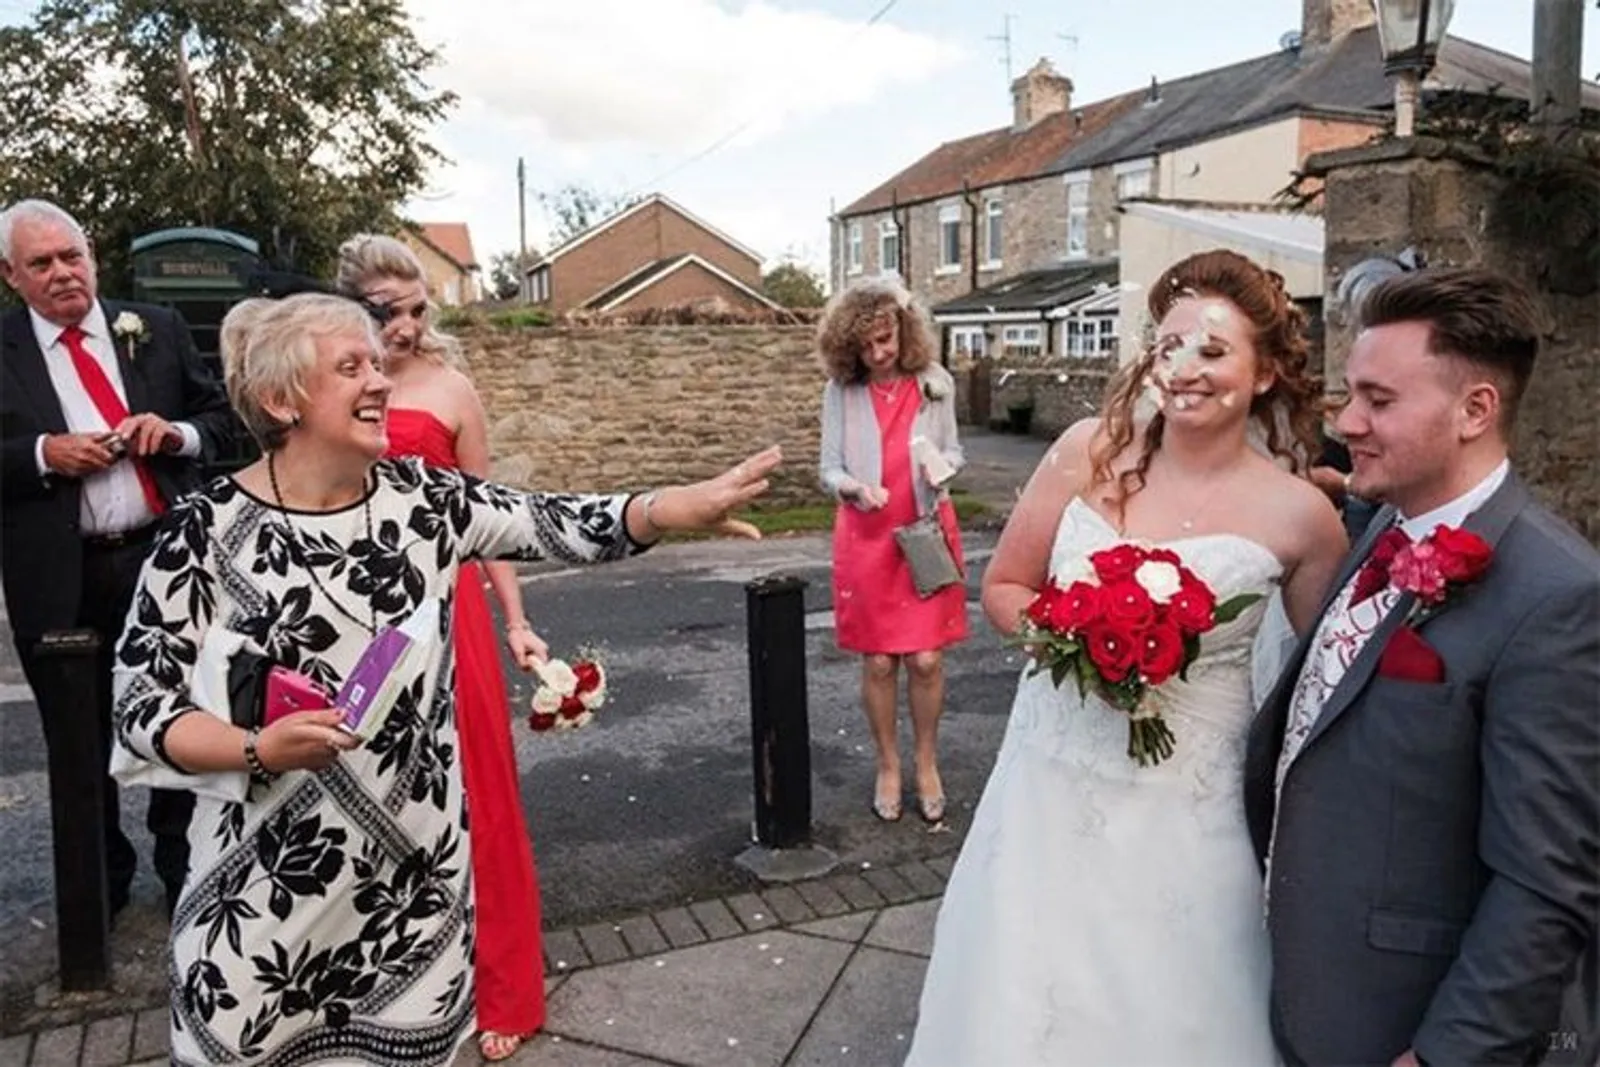 Kocak! 13 Foto Ini Tunjukkan 'Kekacauan' Pernikahan yang Bikin Tertawa